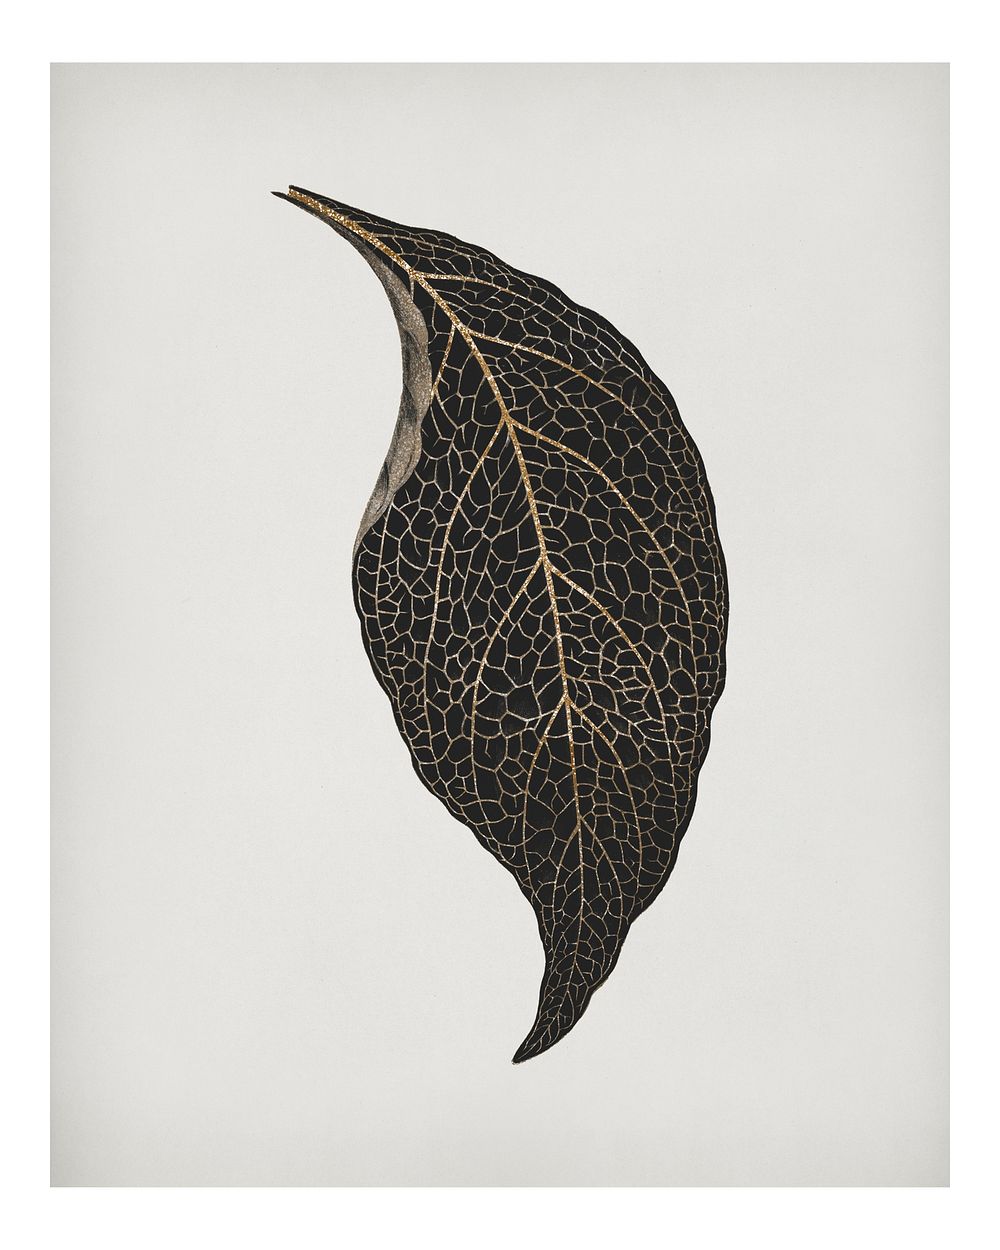 Adelaster Albivenis, engraved leaf illustration wall art print and poster design remix from original artwork of Benjamin…